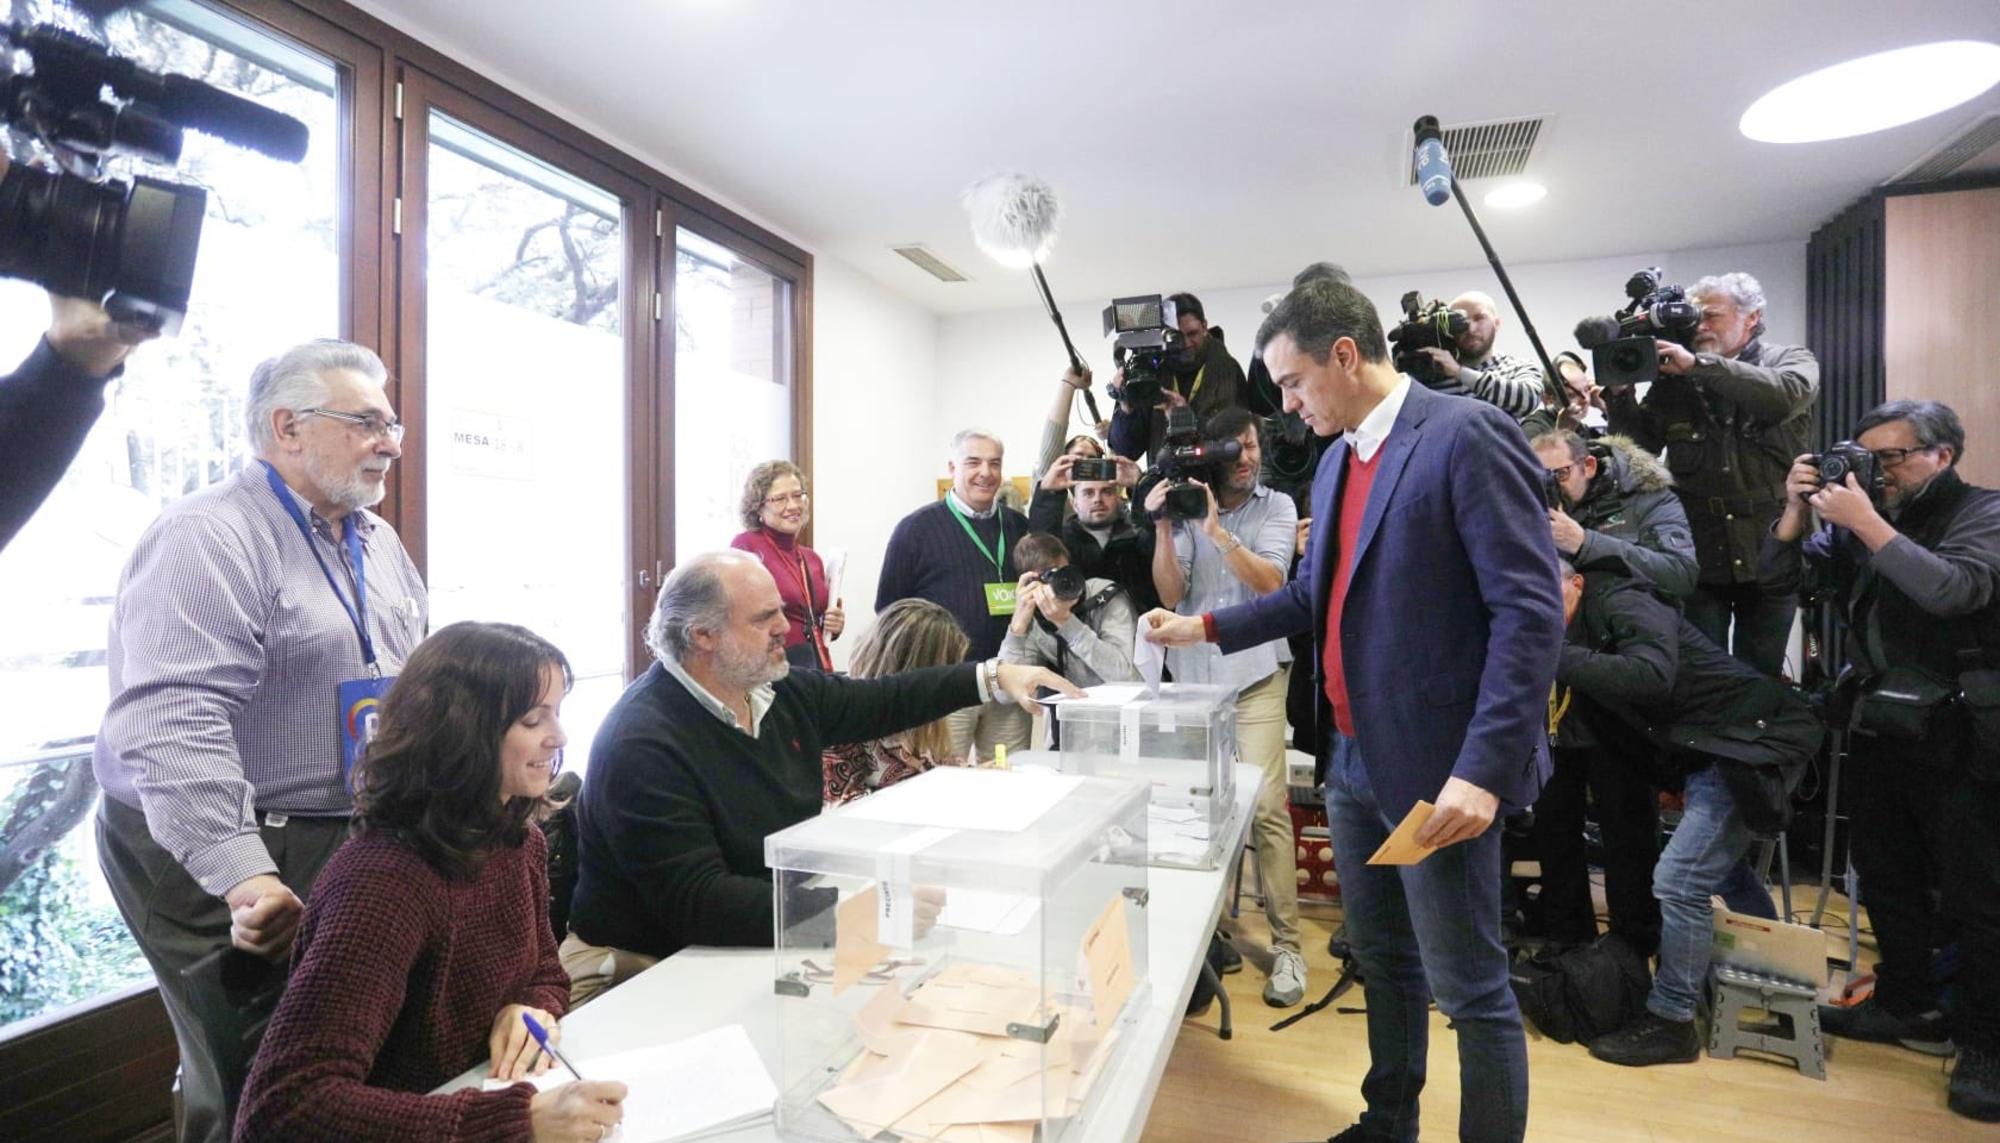 Pedro Sánchez elecciones colegio votación